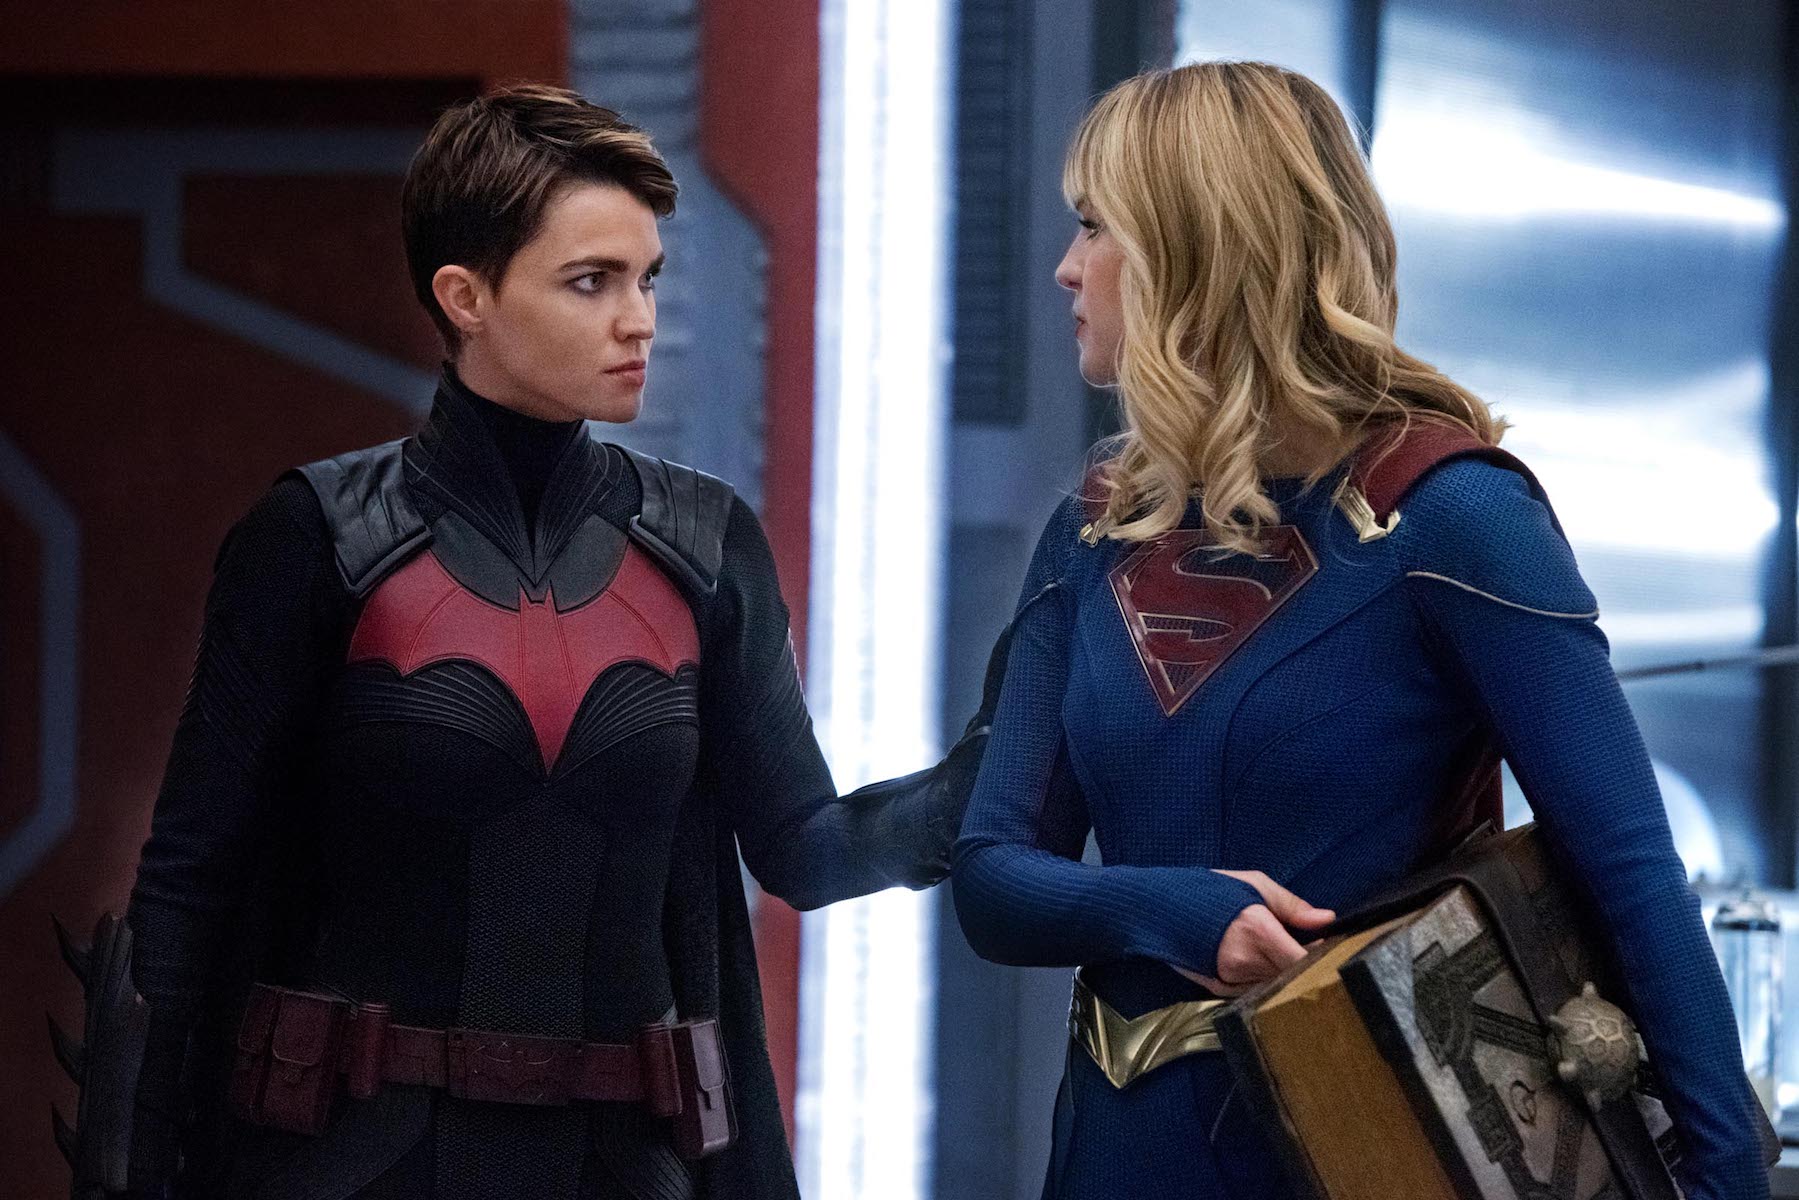 Ruby Rose as Kate Kane/Batwoman and Melissa Benoist as Kara/Supergirl